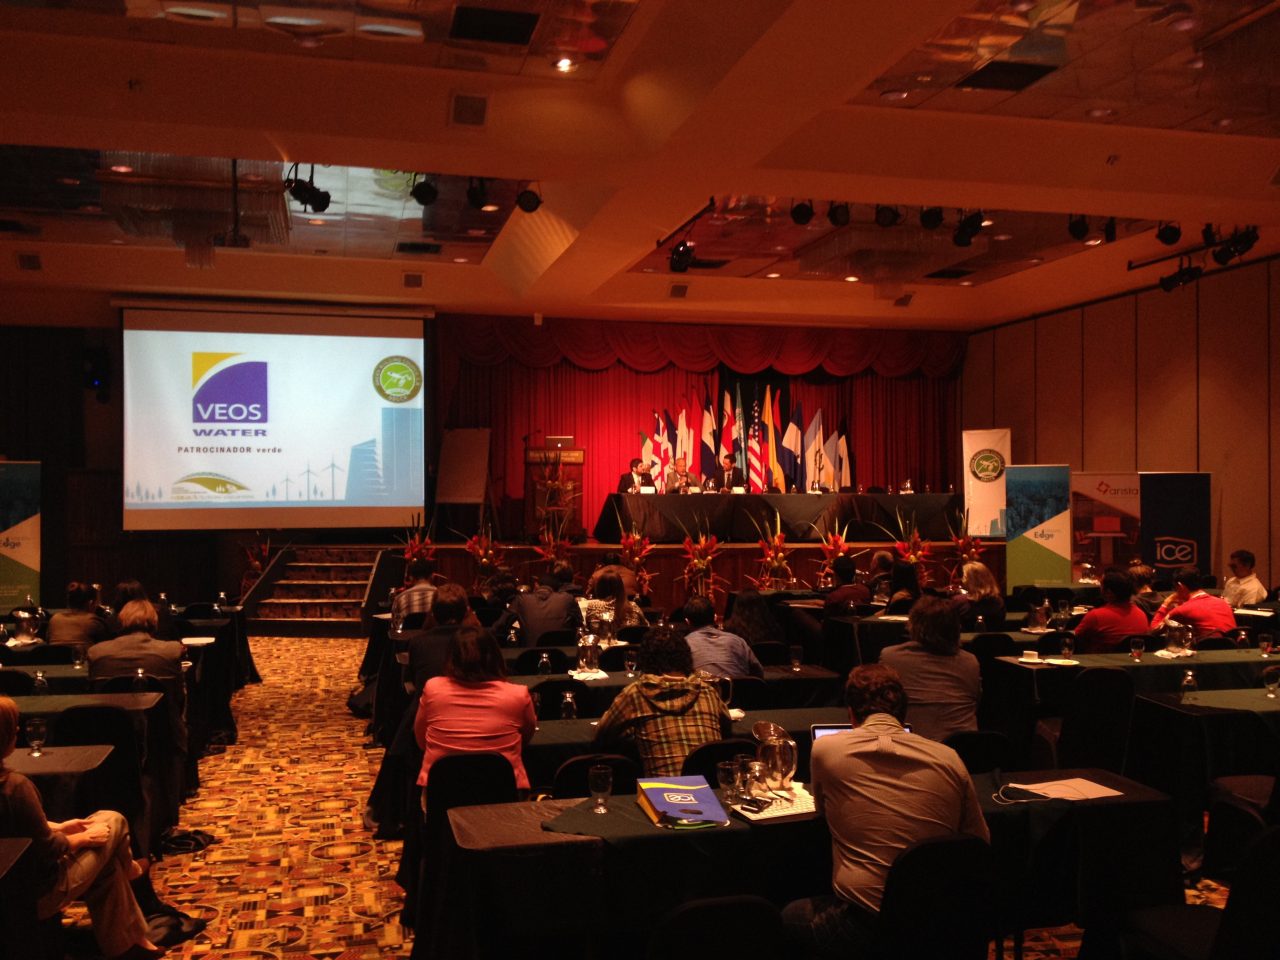 Assemblée générale annuelle « Green Building Council 2015 », Costa Rica